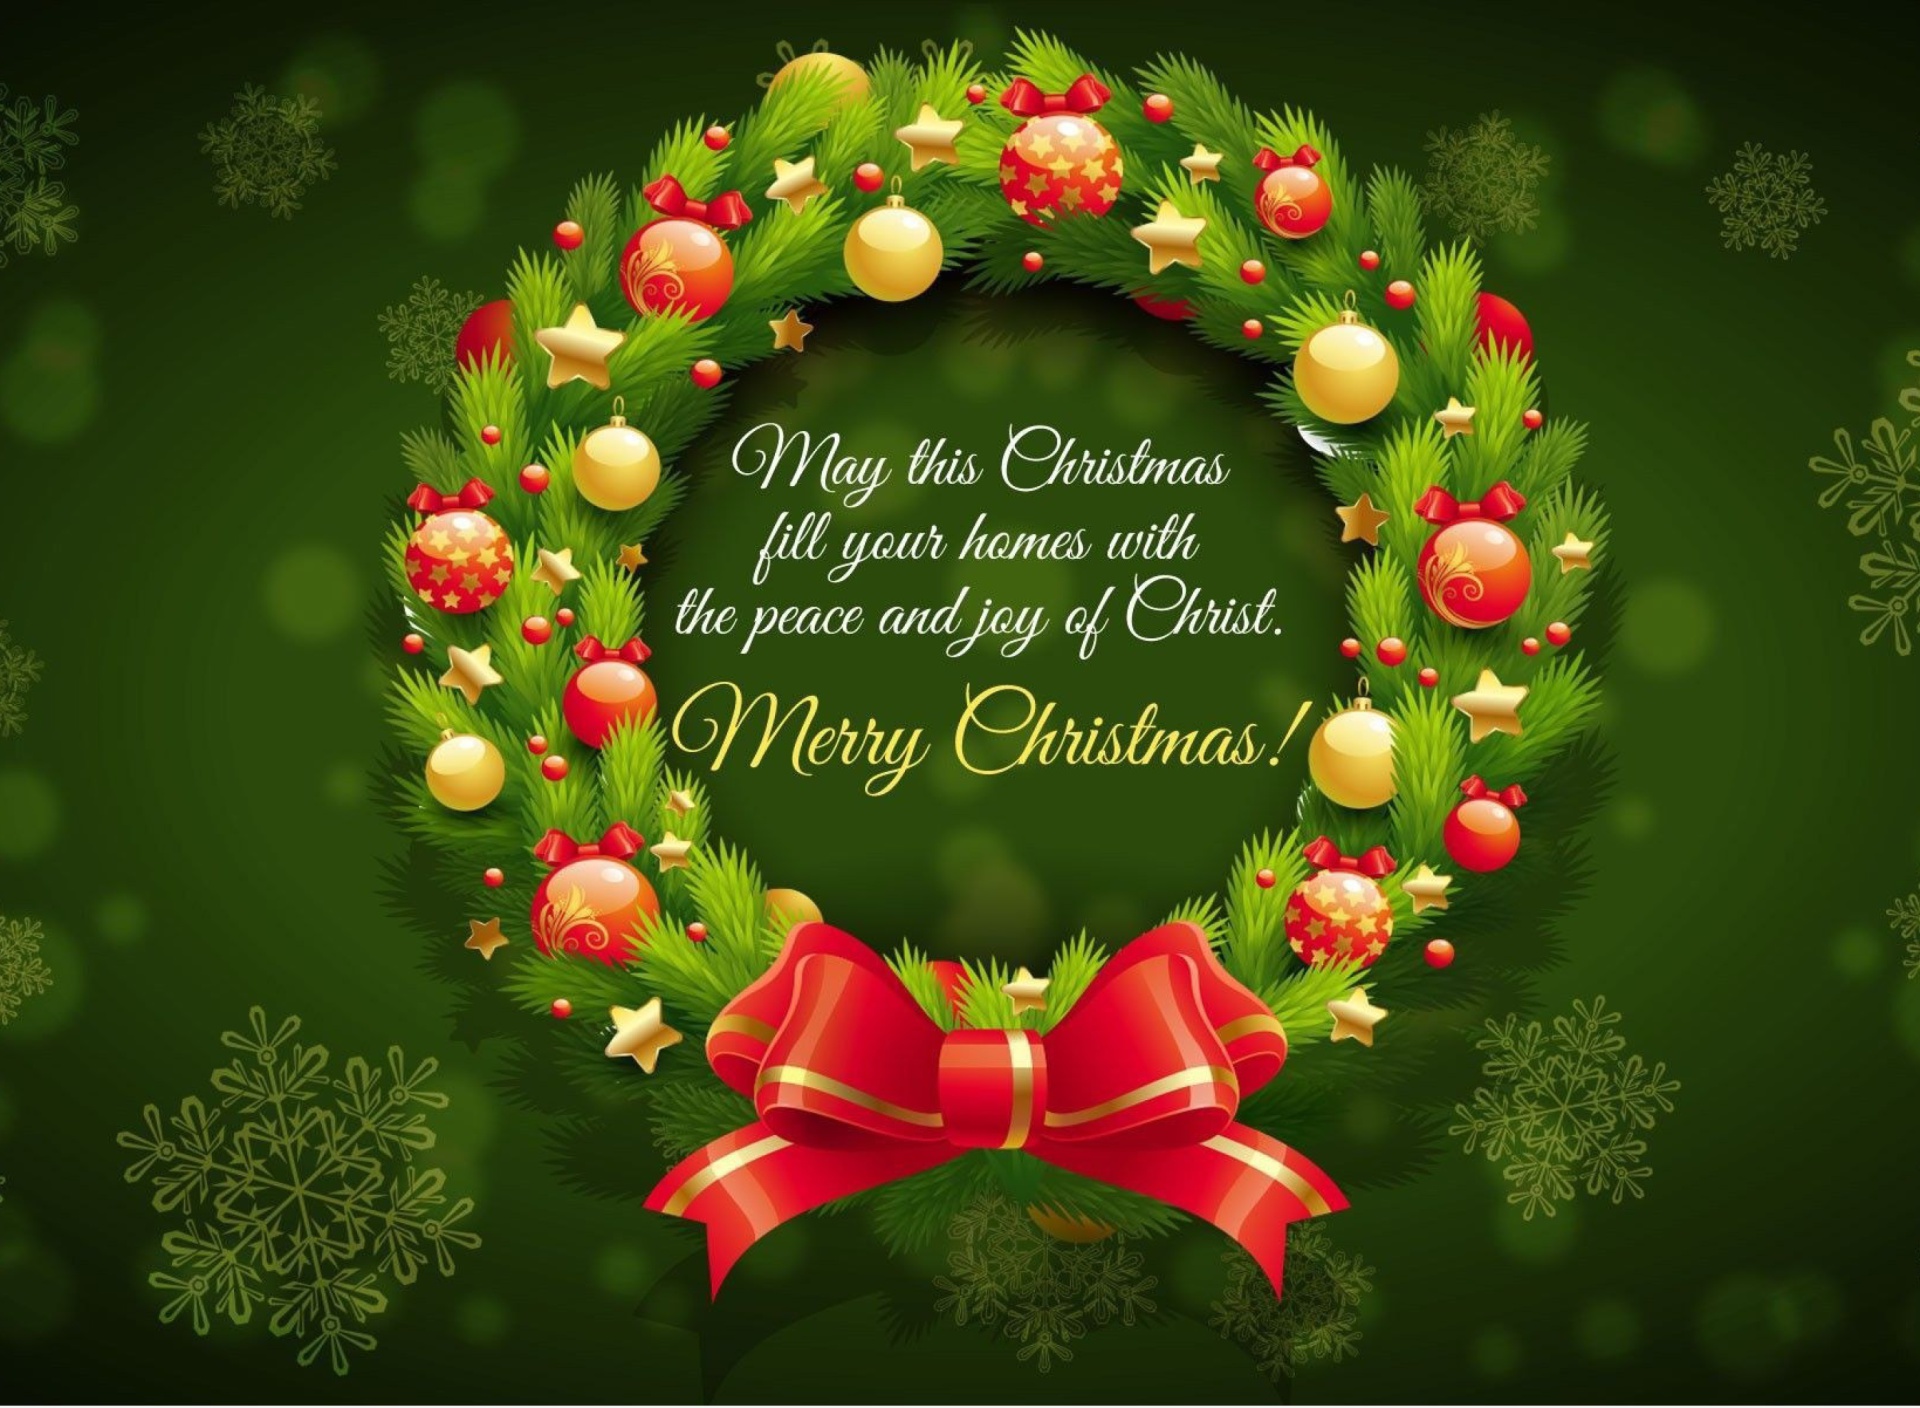 Обои Merry Christmas 25 December SMS Wish 1920x1408